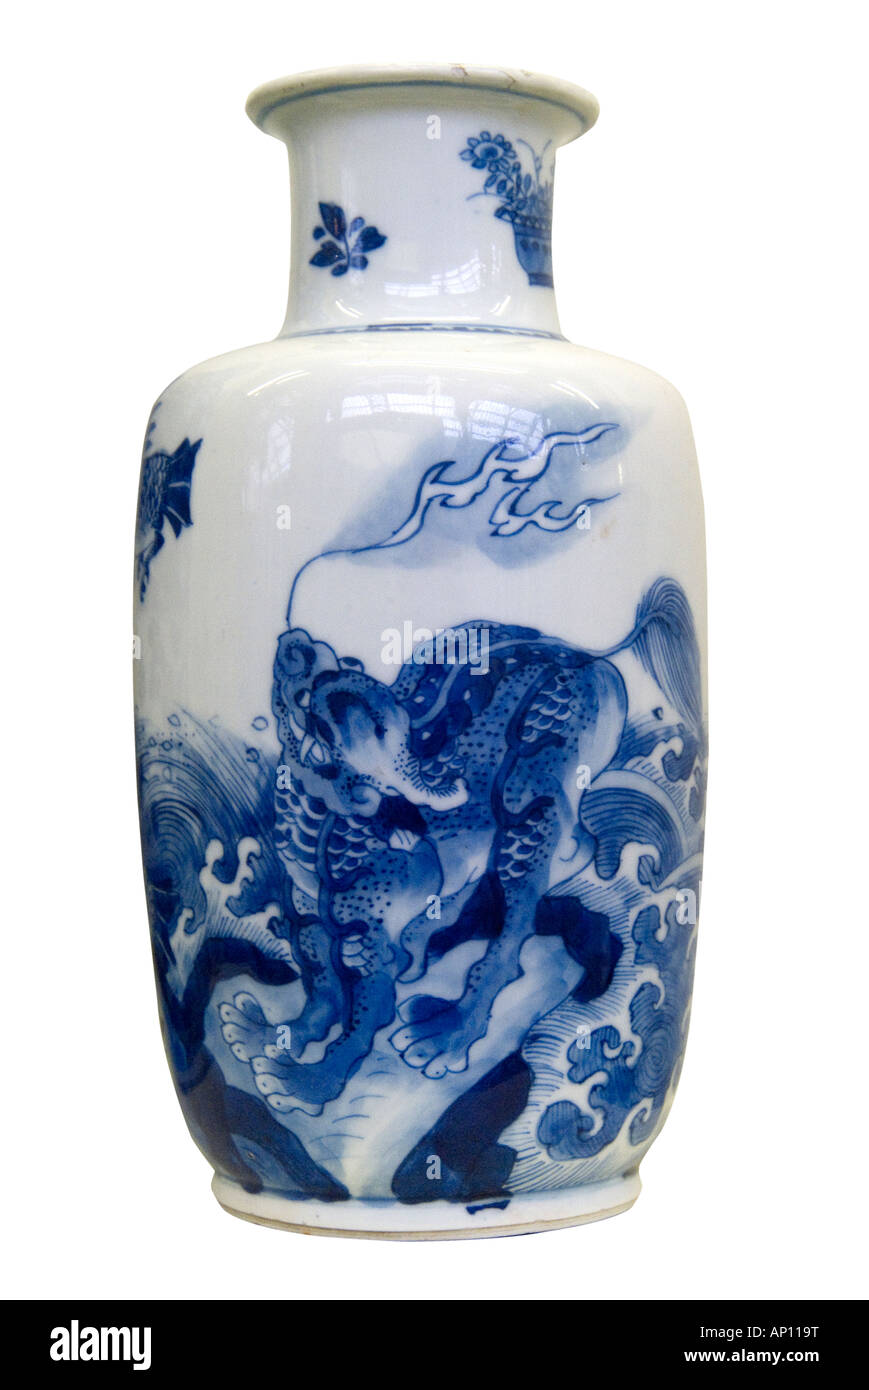 Dynastie des Ming vase chinois en céramique porcelaine dragon féroce feu équilibre symétrie harmonie grâce au nord-est de l'Asie Asie Chine Manchuri Banque D'Images